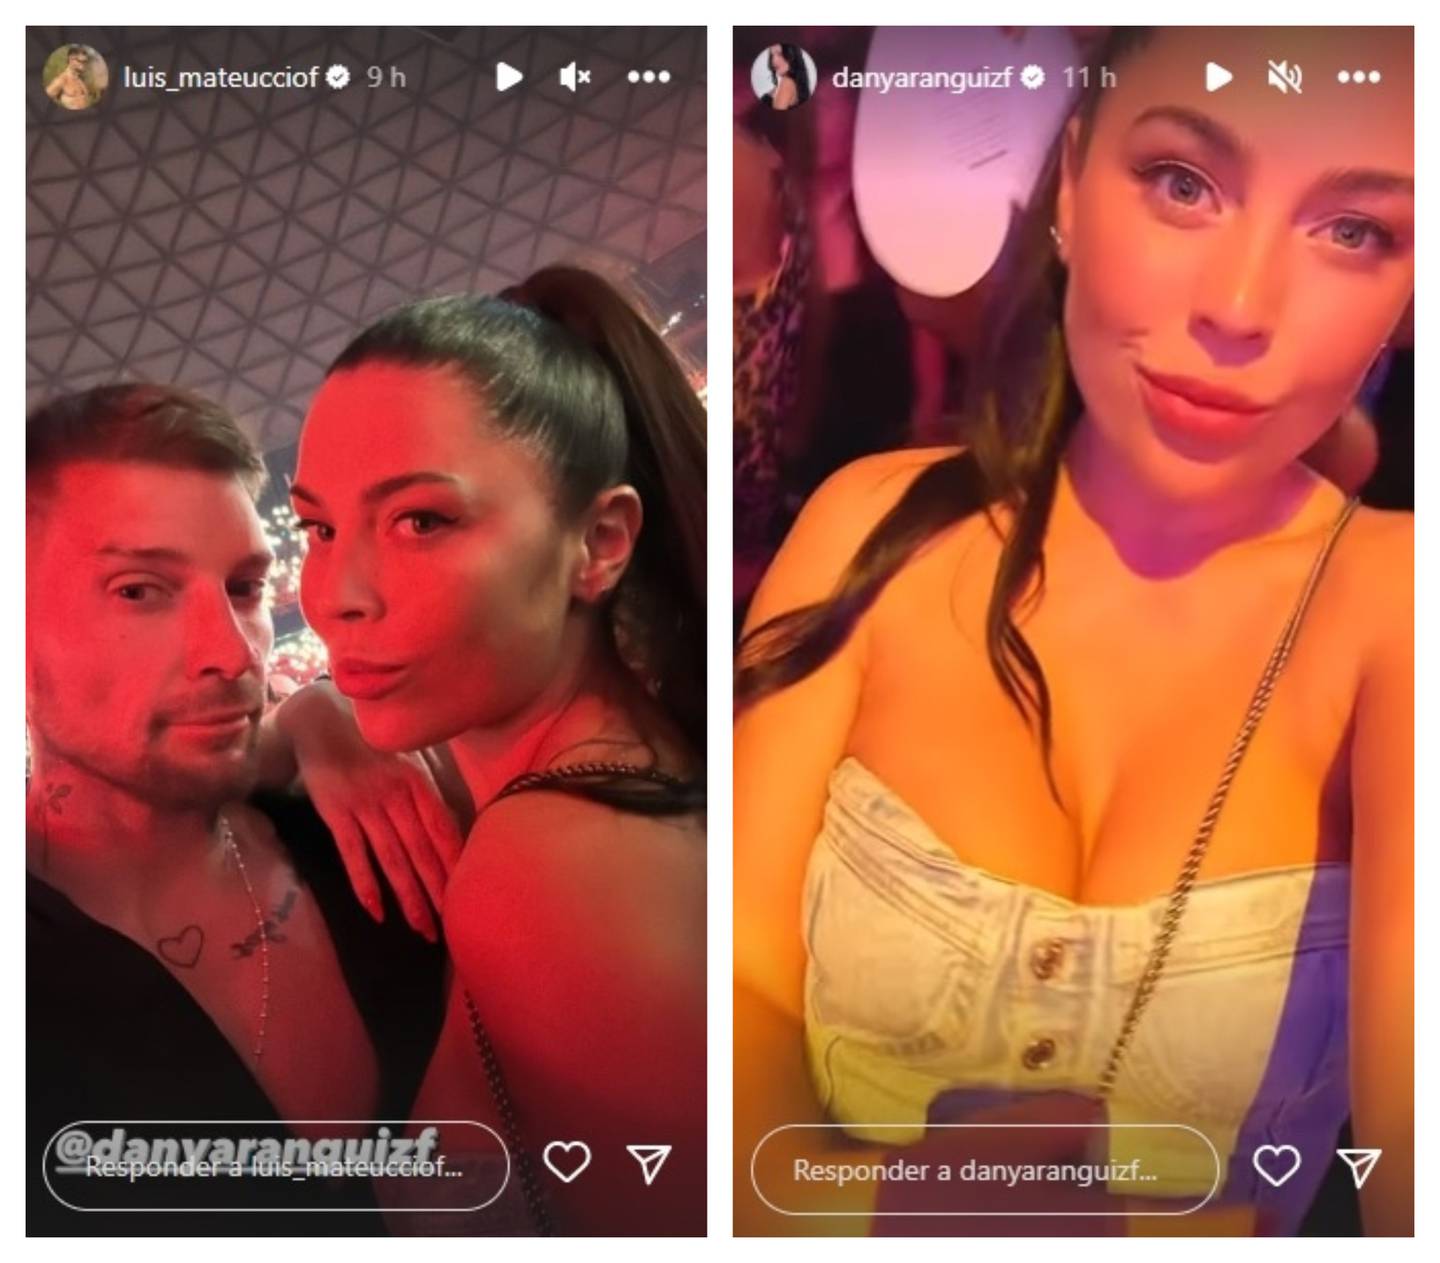 La pareja compartió en sus historias de Instagram imágenes de su asistencia al recital de Romeo Santos.